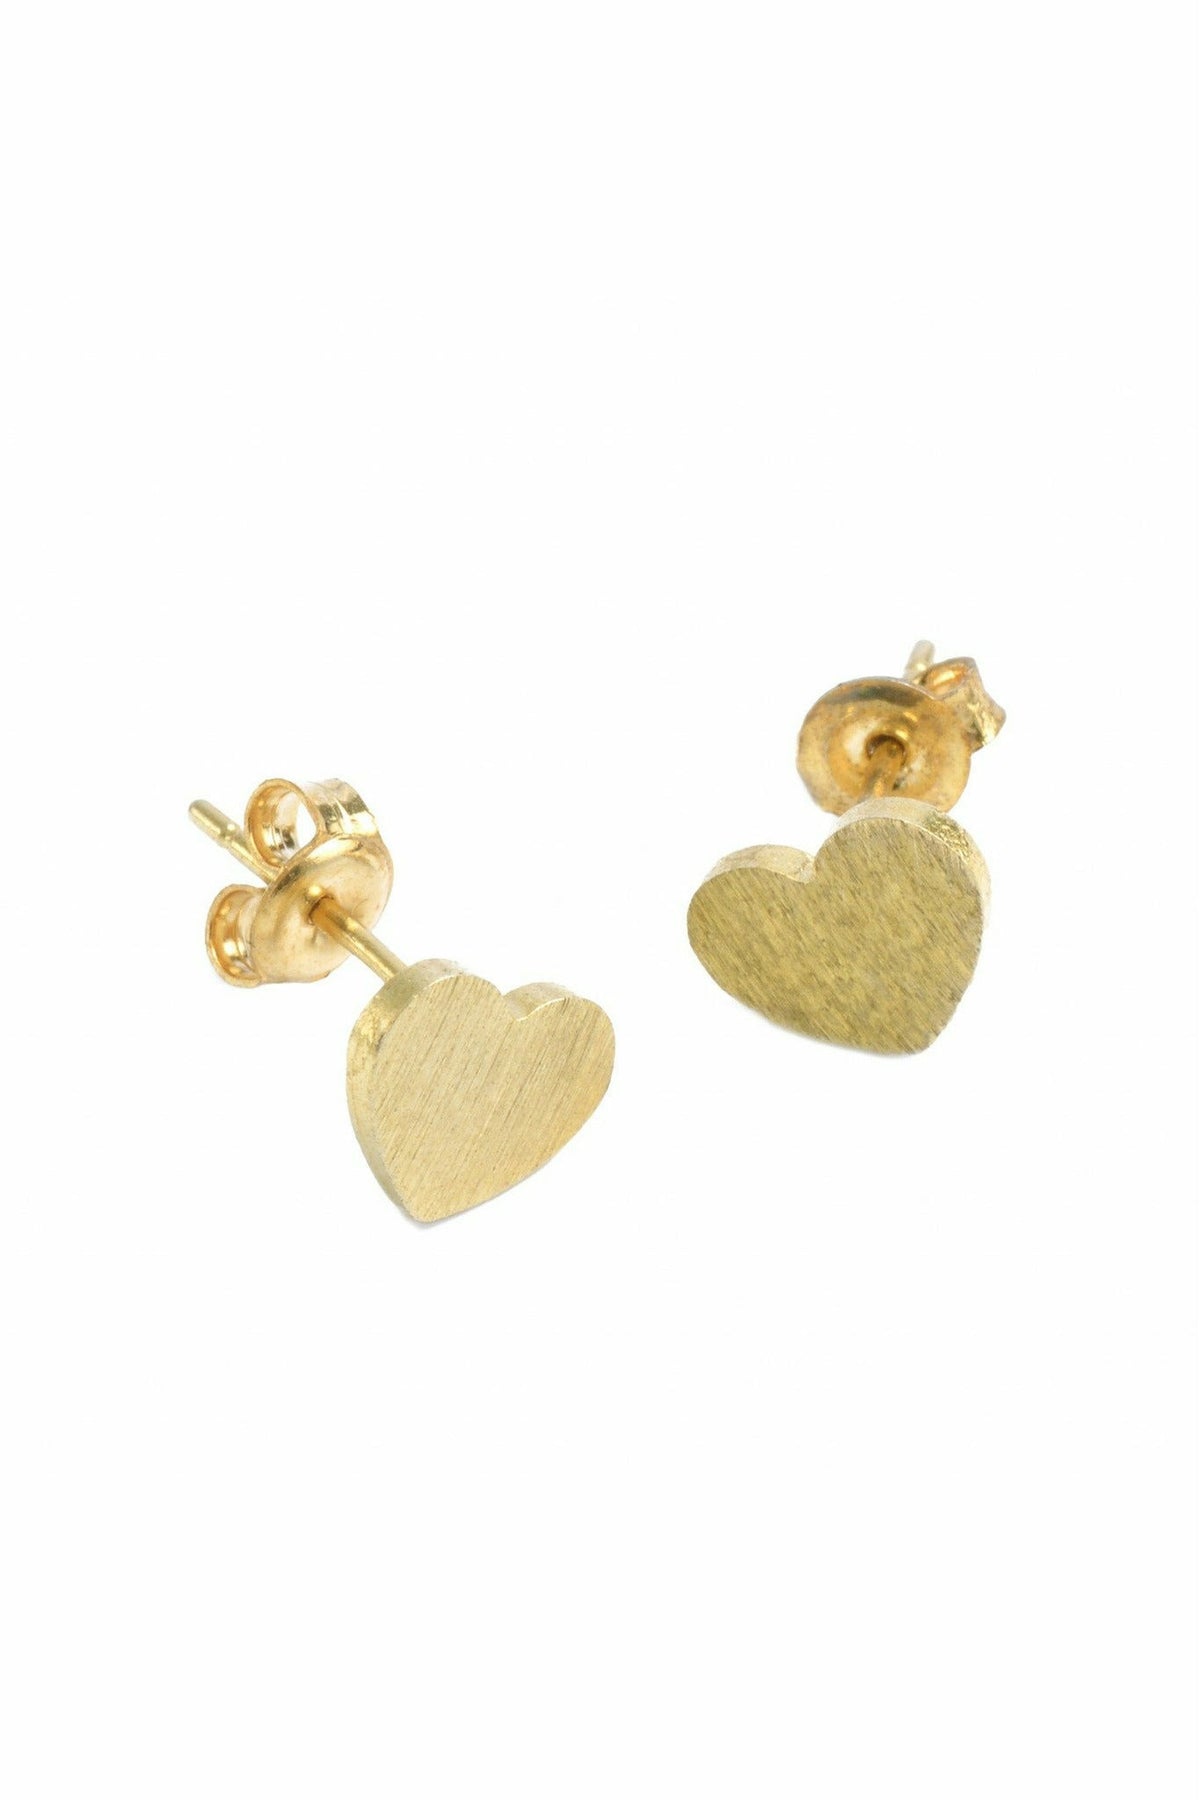 Small Heart Earring In Gold EAK08G